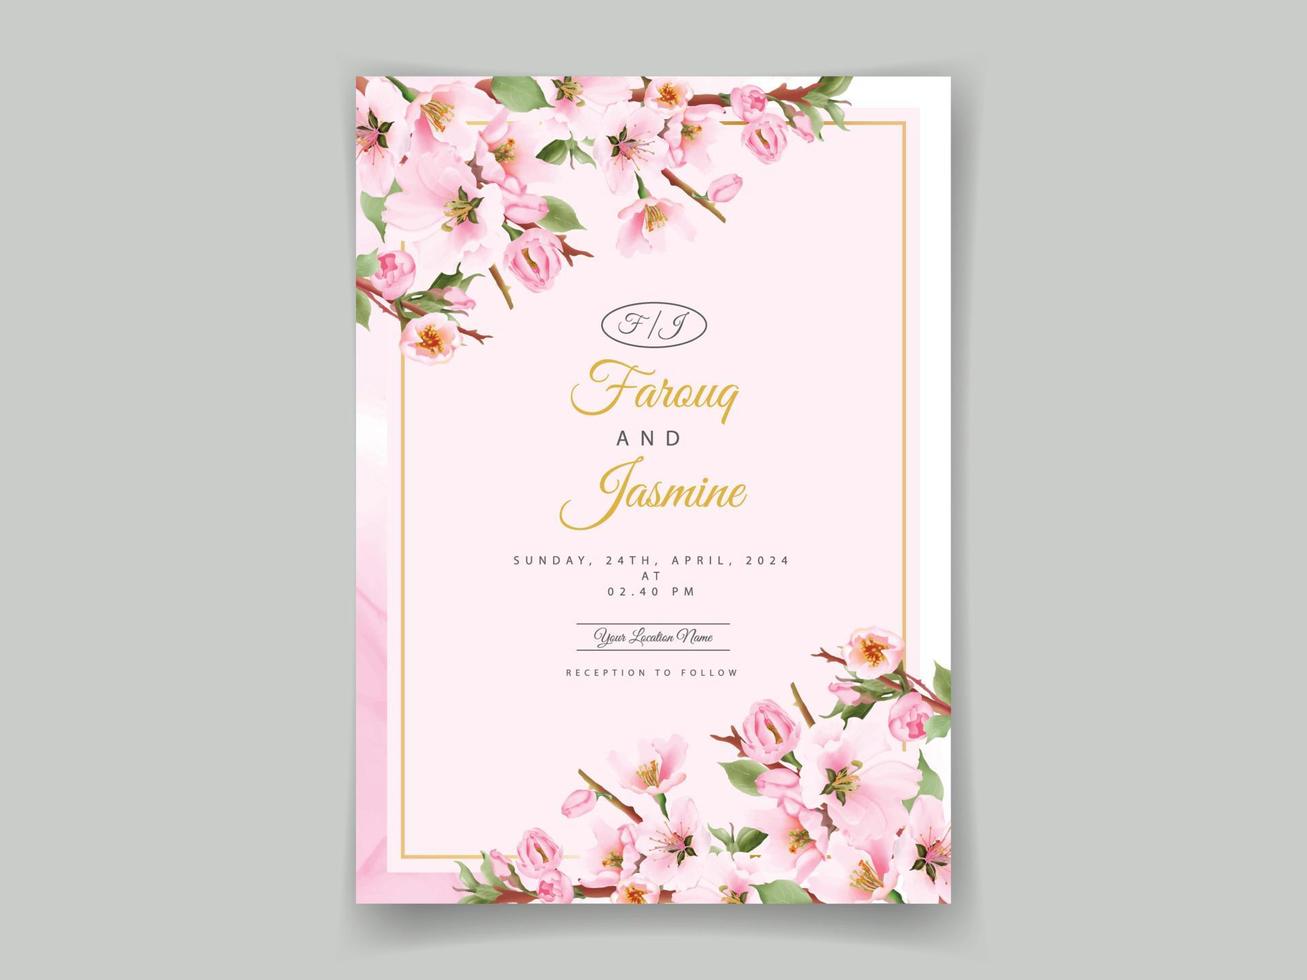 convites de casamento rosa flor de cerejeira vetor